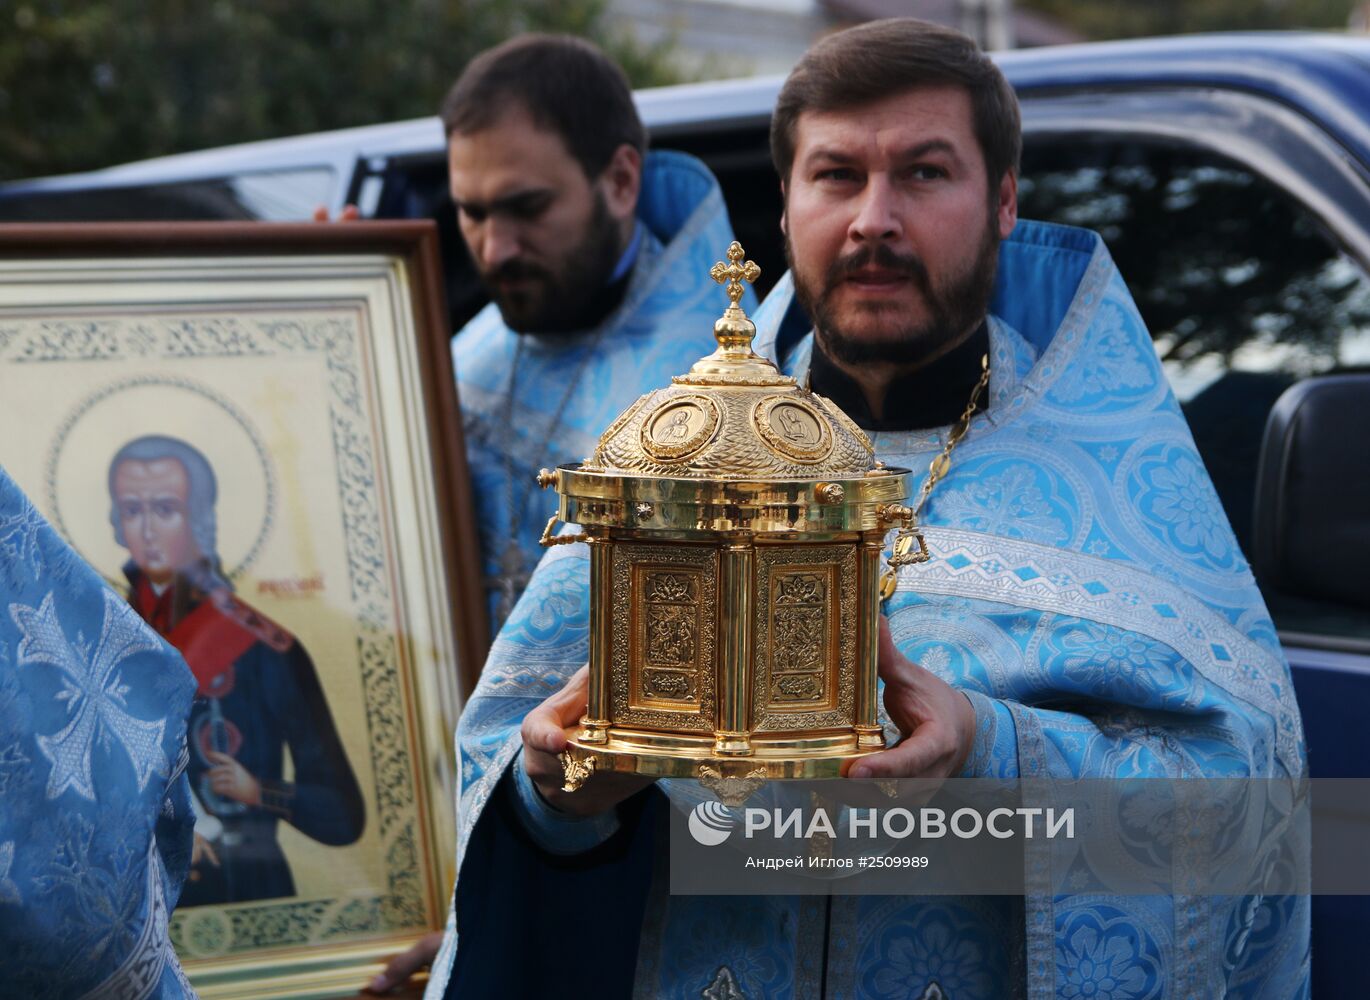 Мощи святого Федора Ушакова доставили в Крым